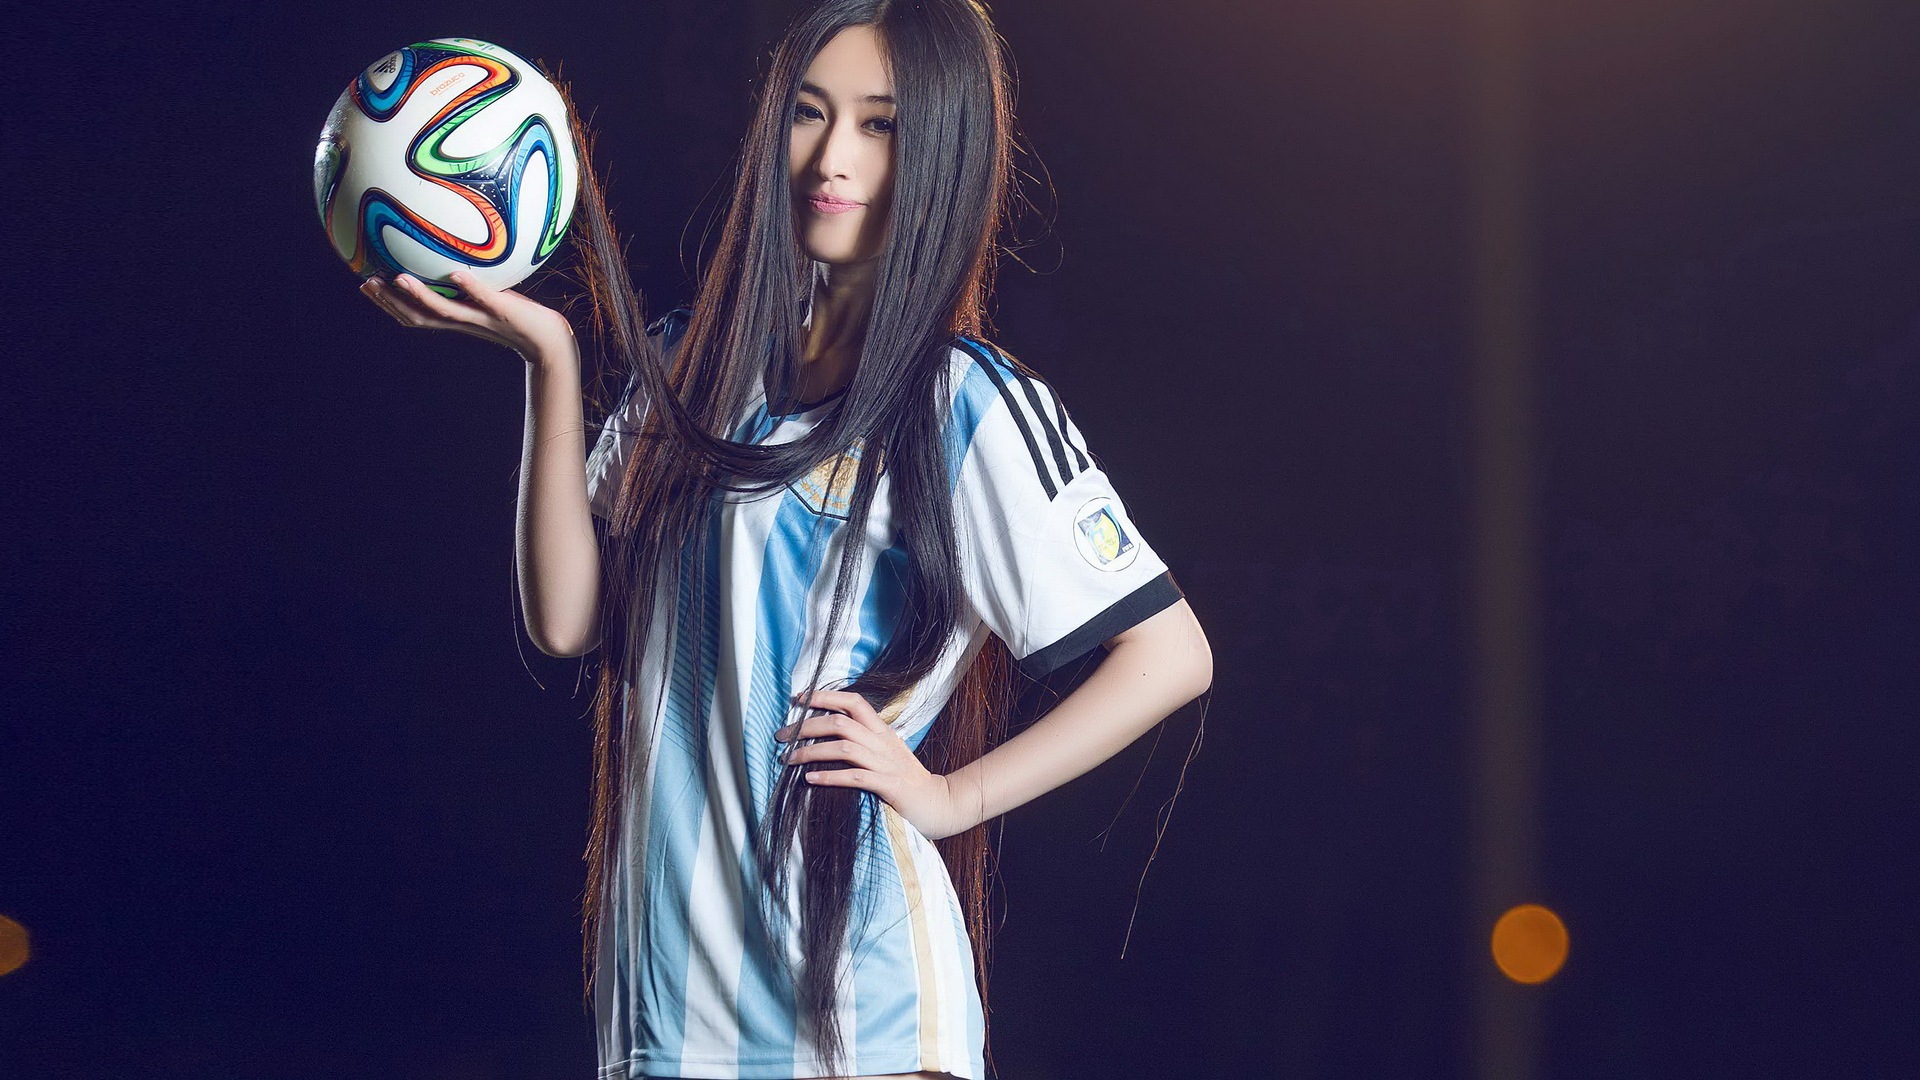 32 camisetas de la Copa del Mundo de fútbol, bebé wallpapers hermosas chicas HD #23 - 1920x1080